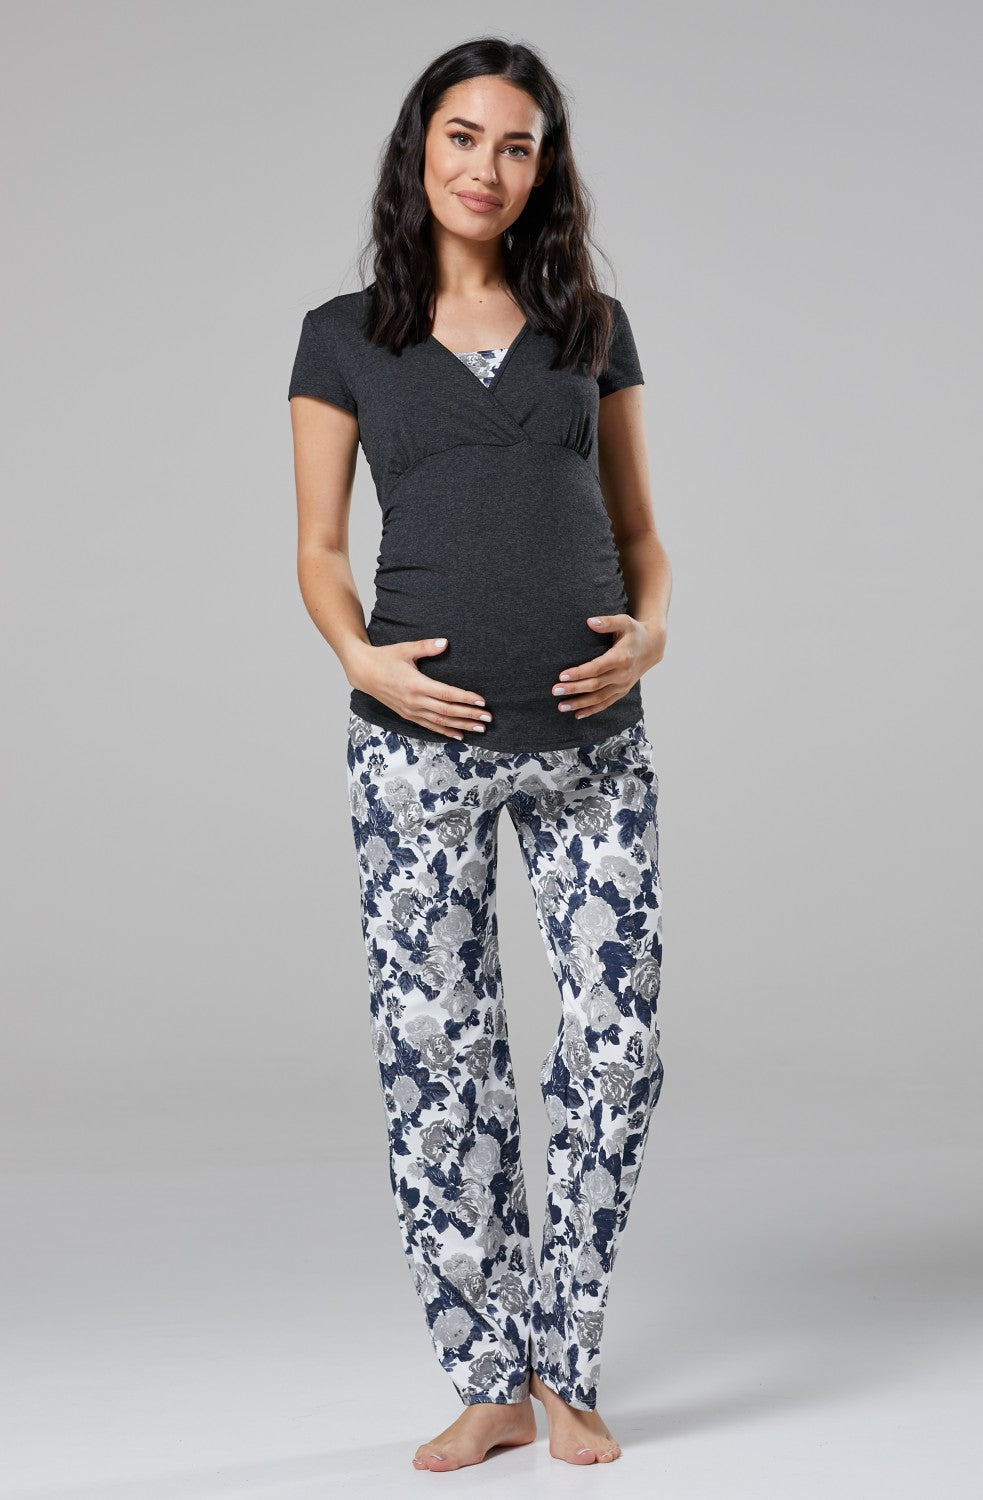 Maternity Nursing Breastfeeding Pyjamas